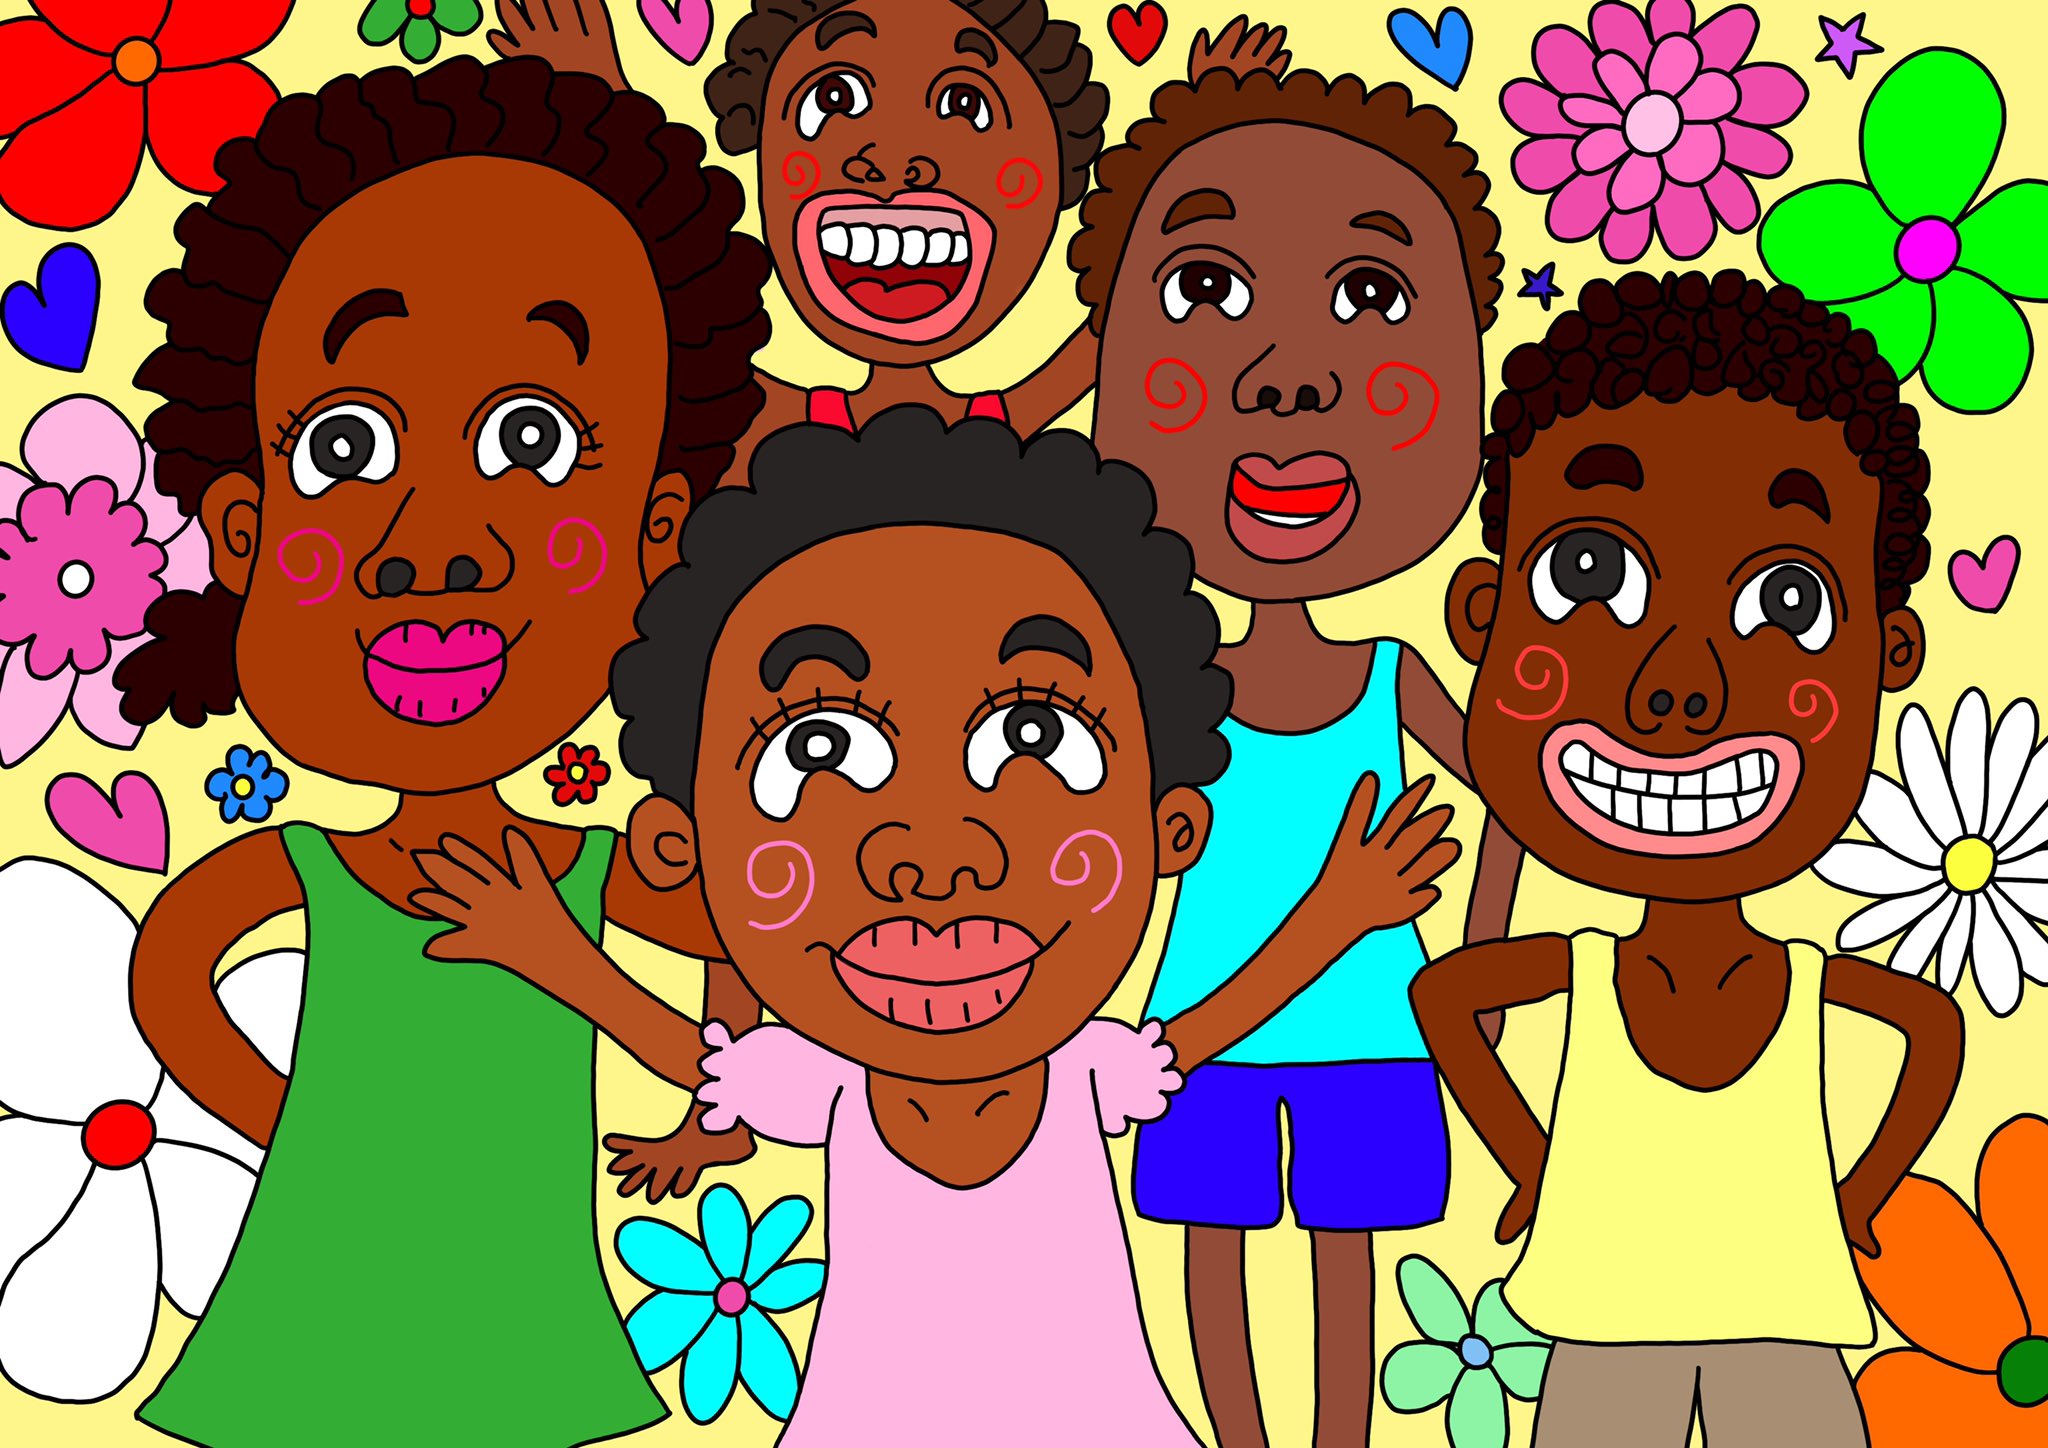 なかマケ ワーキングママの毎日イラスト No Twitter 昨日ブログで公開した アフリカの子どもの日 のイラストです どの国でも子供たちの 笑顔は素敵ですね インスタグラムでも毎日イラスト更新中 アフリカ こども 笑顔 イラスト 絵描きさんと繋がりたい